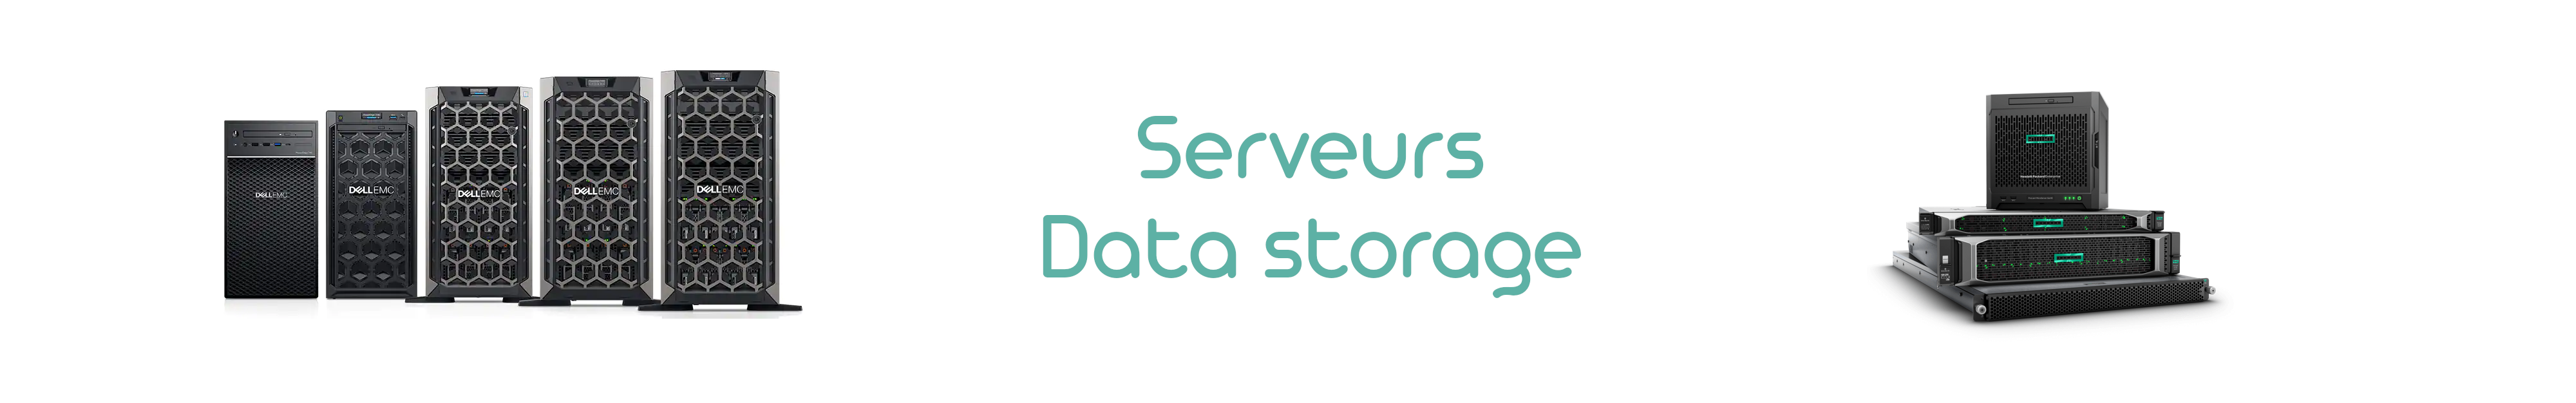 Serveur reconditionné - Data storage